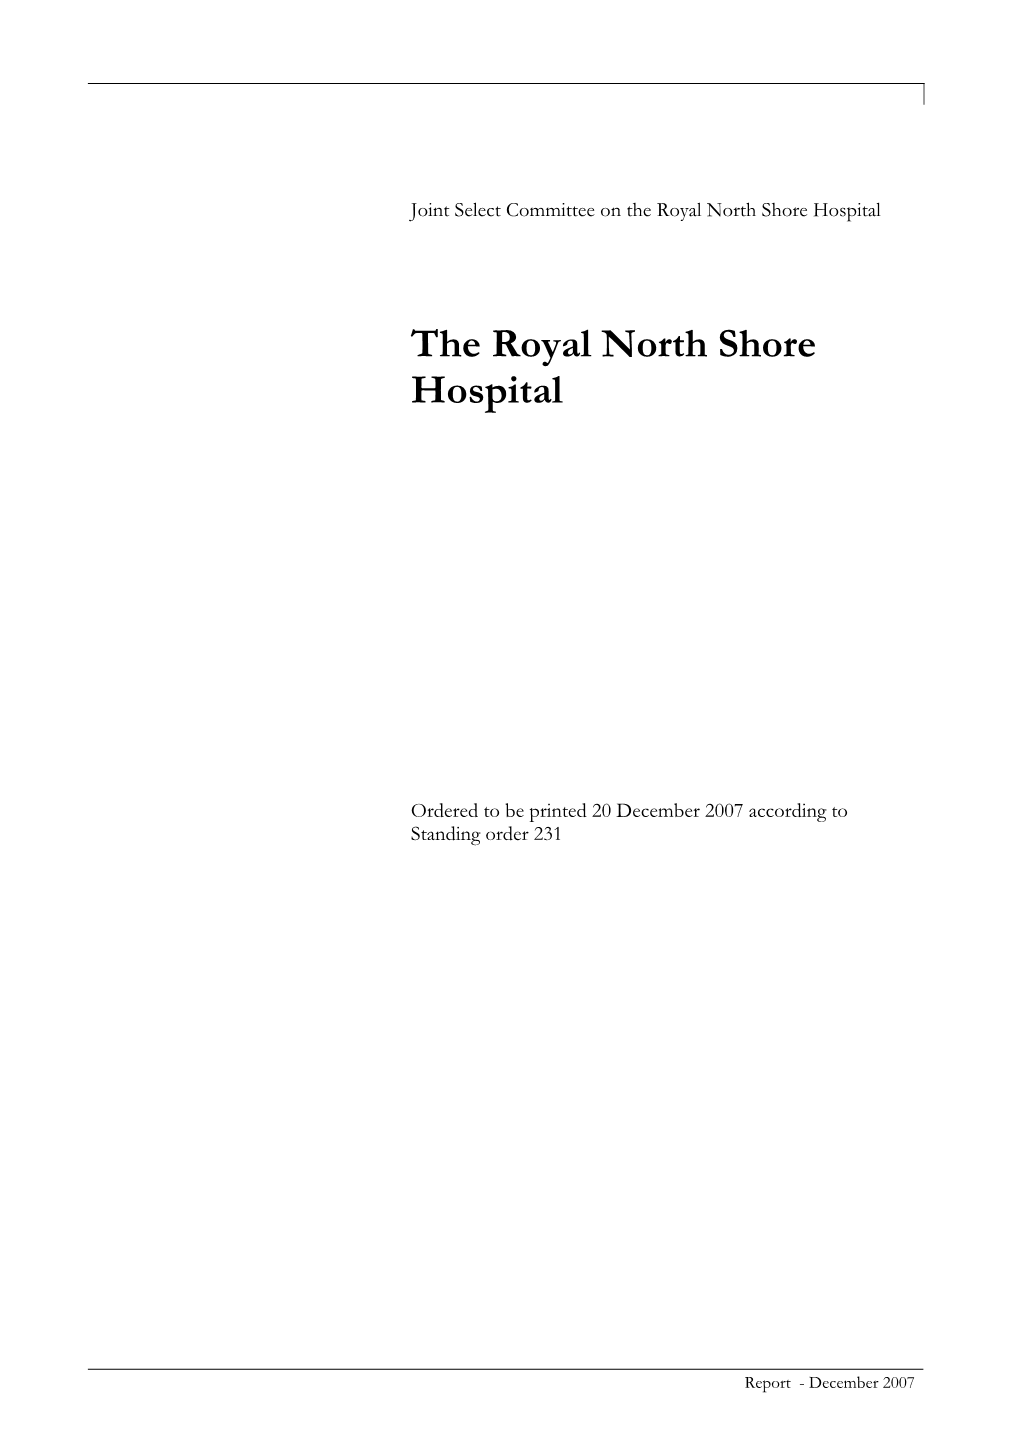 The Royal North Shore Hospital